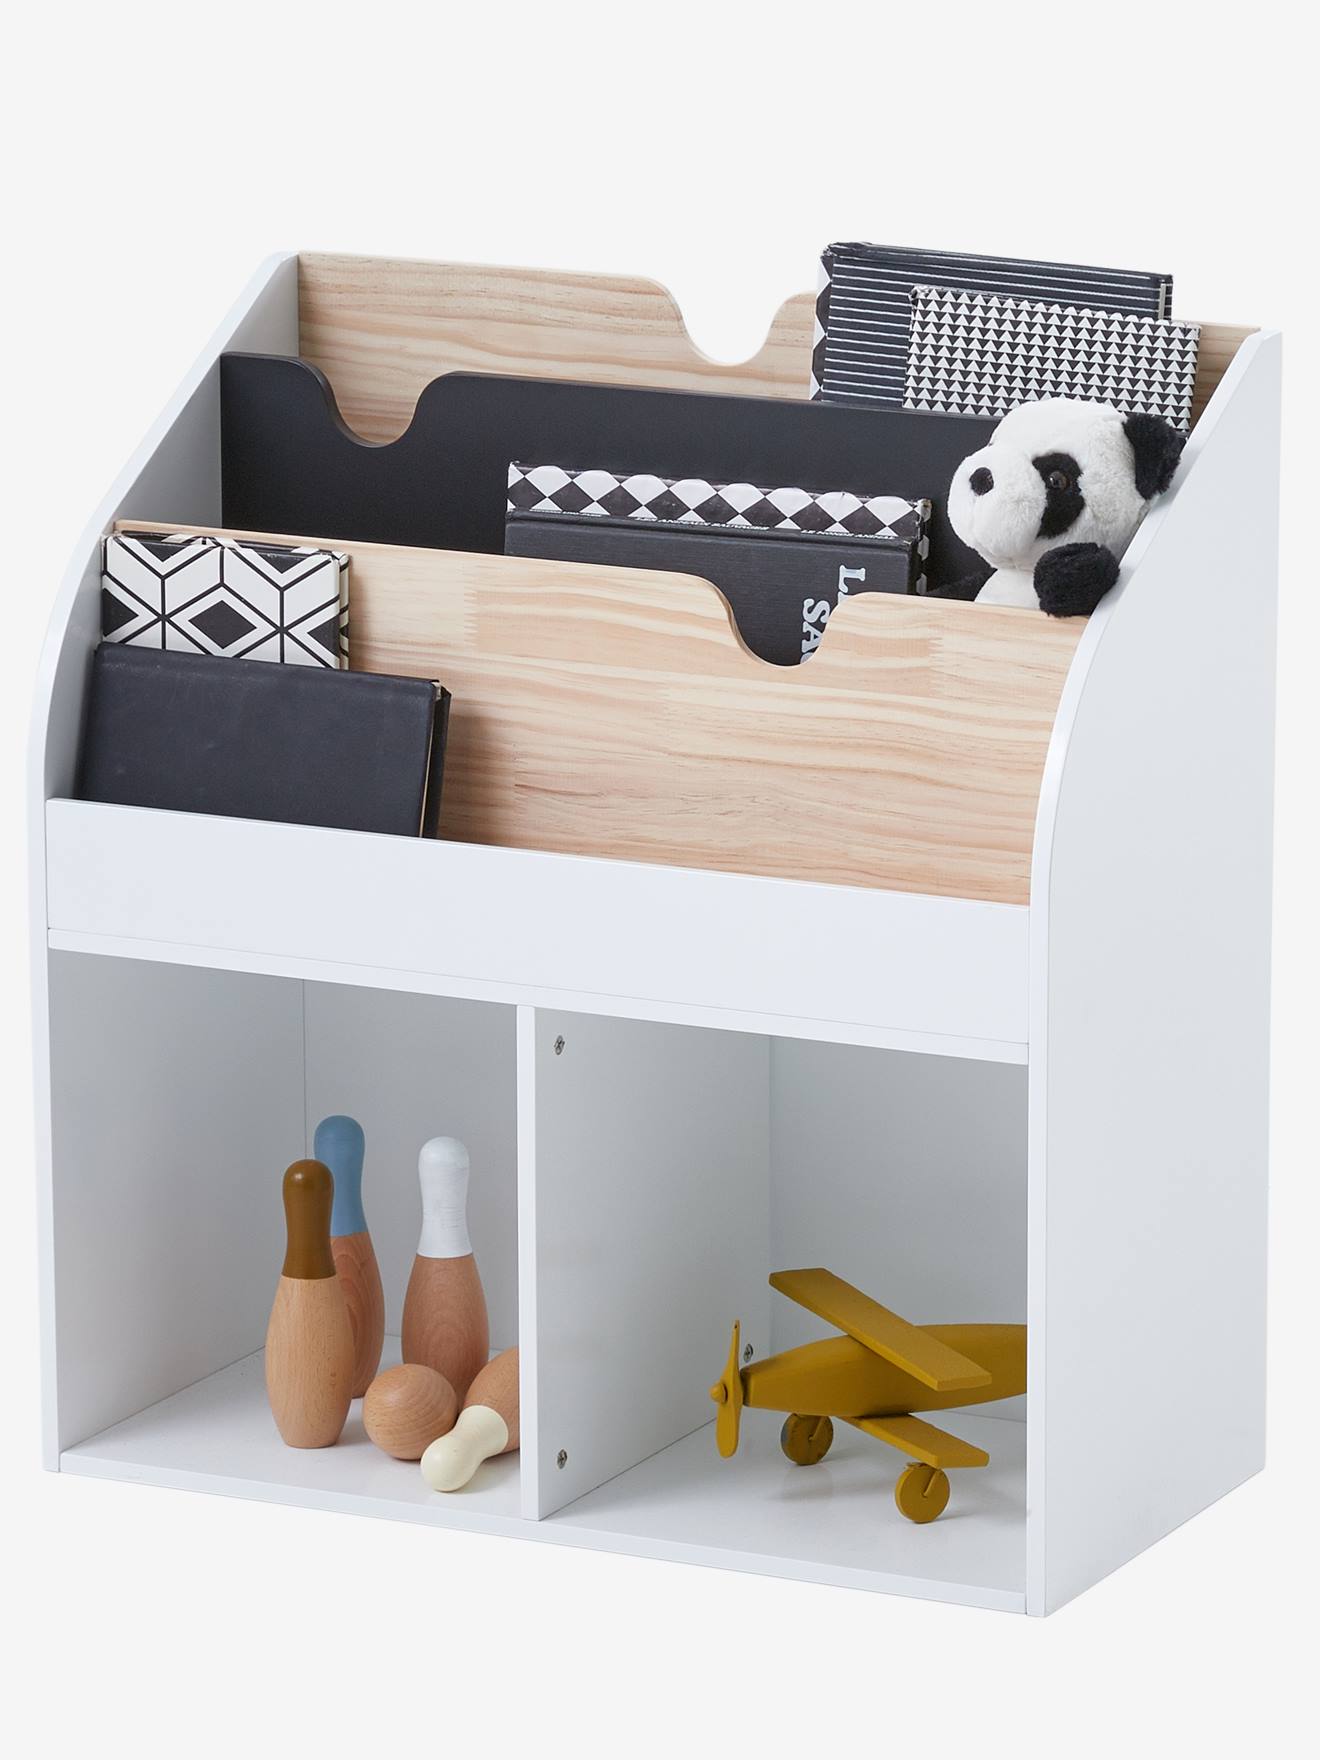 Mueble de almacenaje para libros y juguetes blanco claro liso con adorno -  Vertbaudet